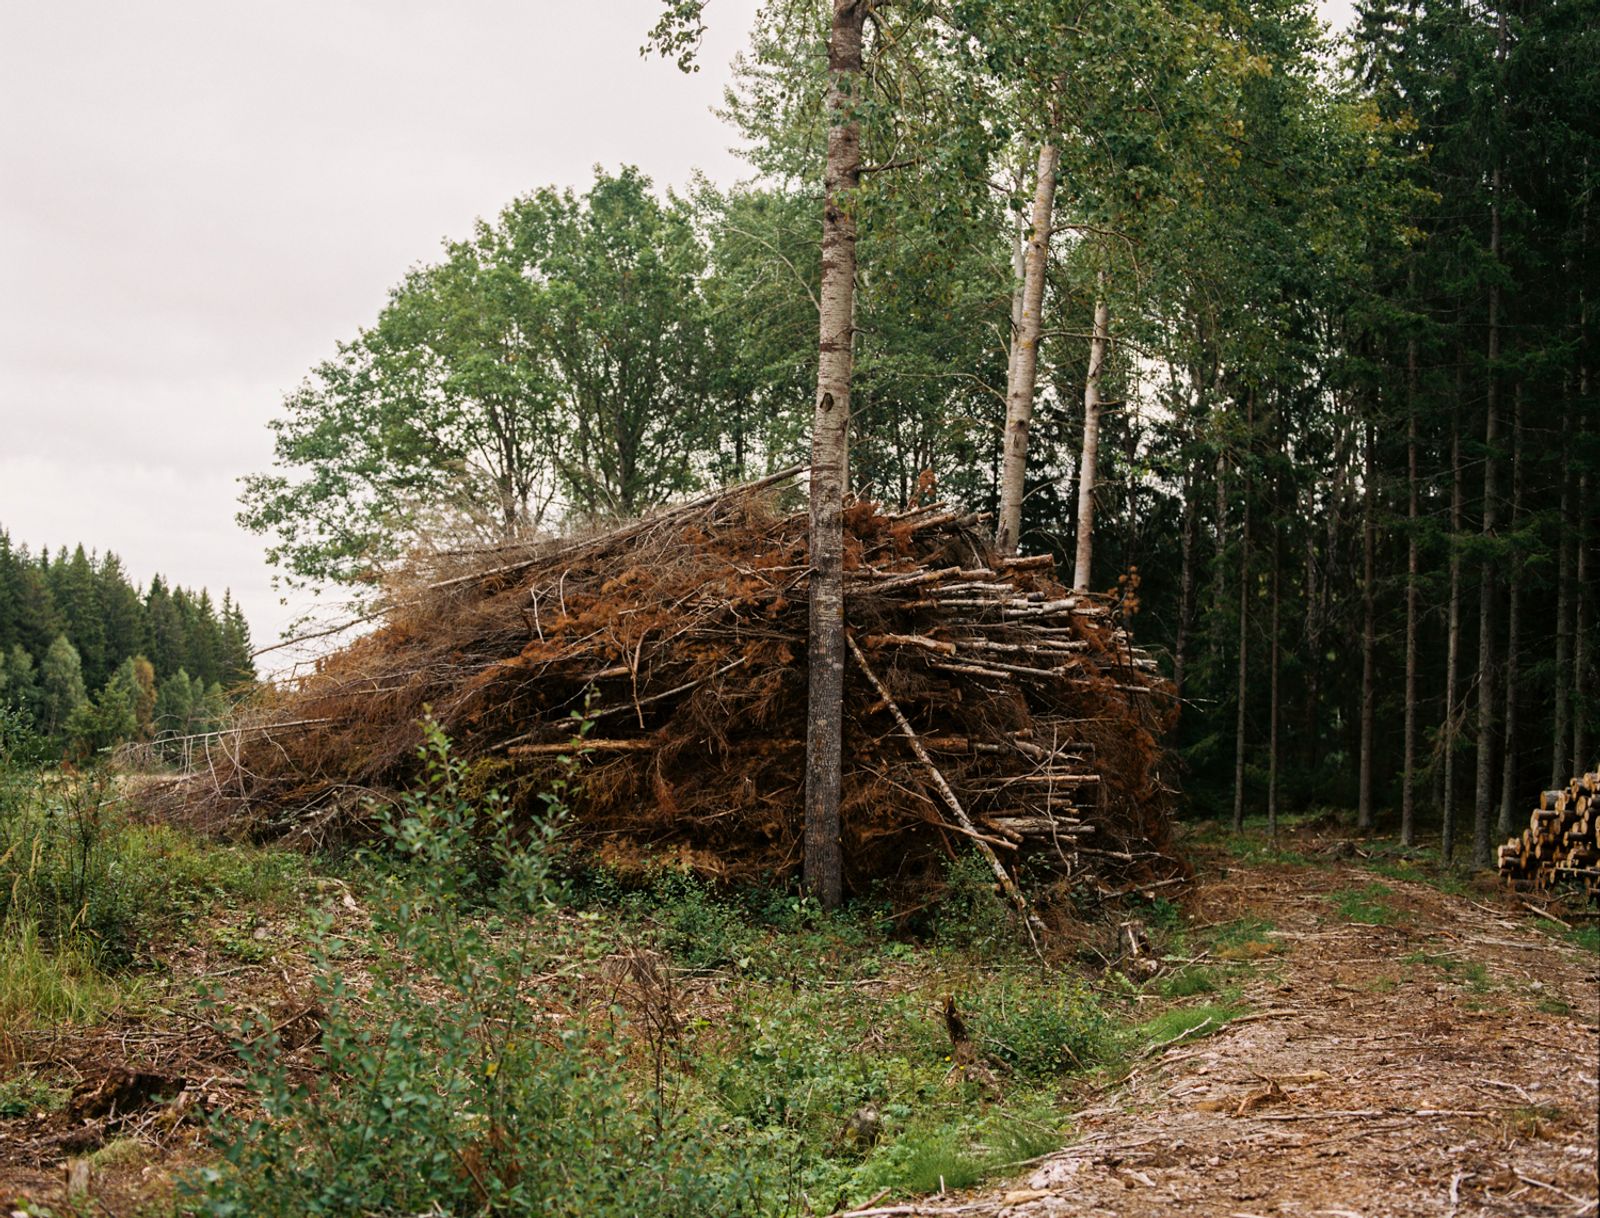 © Sanni Saarinen - The trees, Parainen, 2017